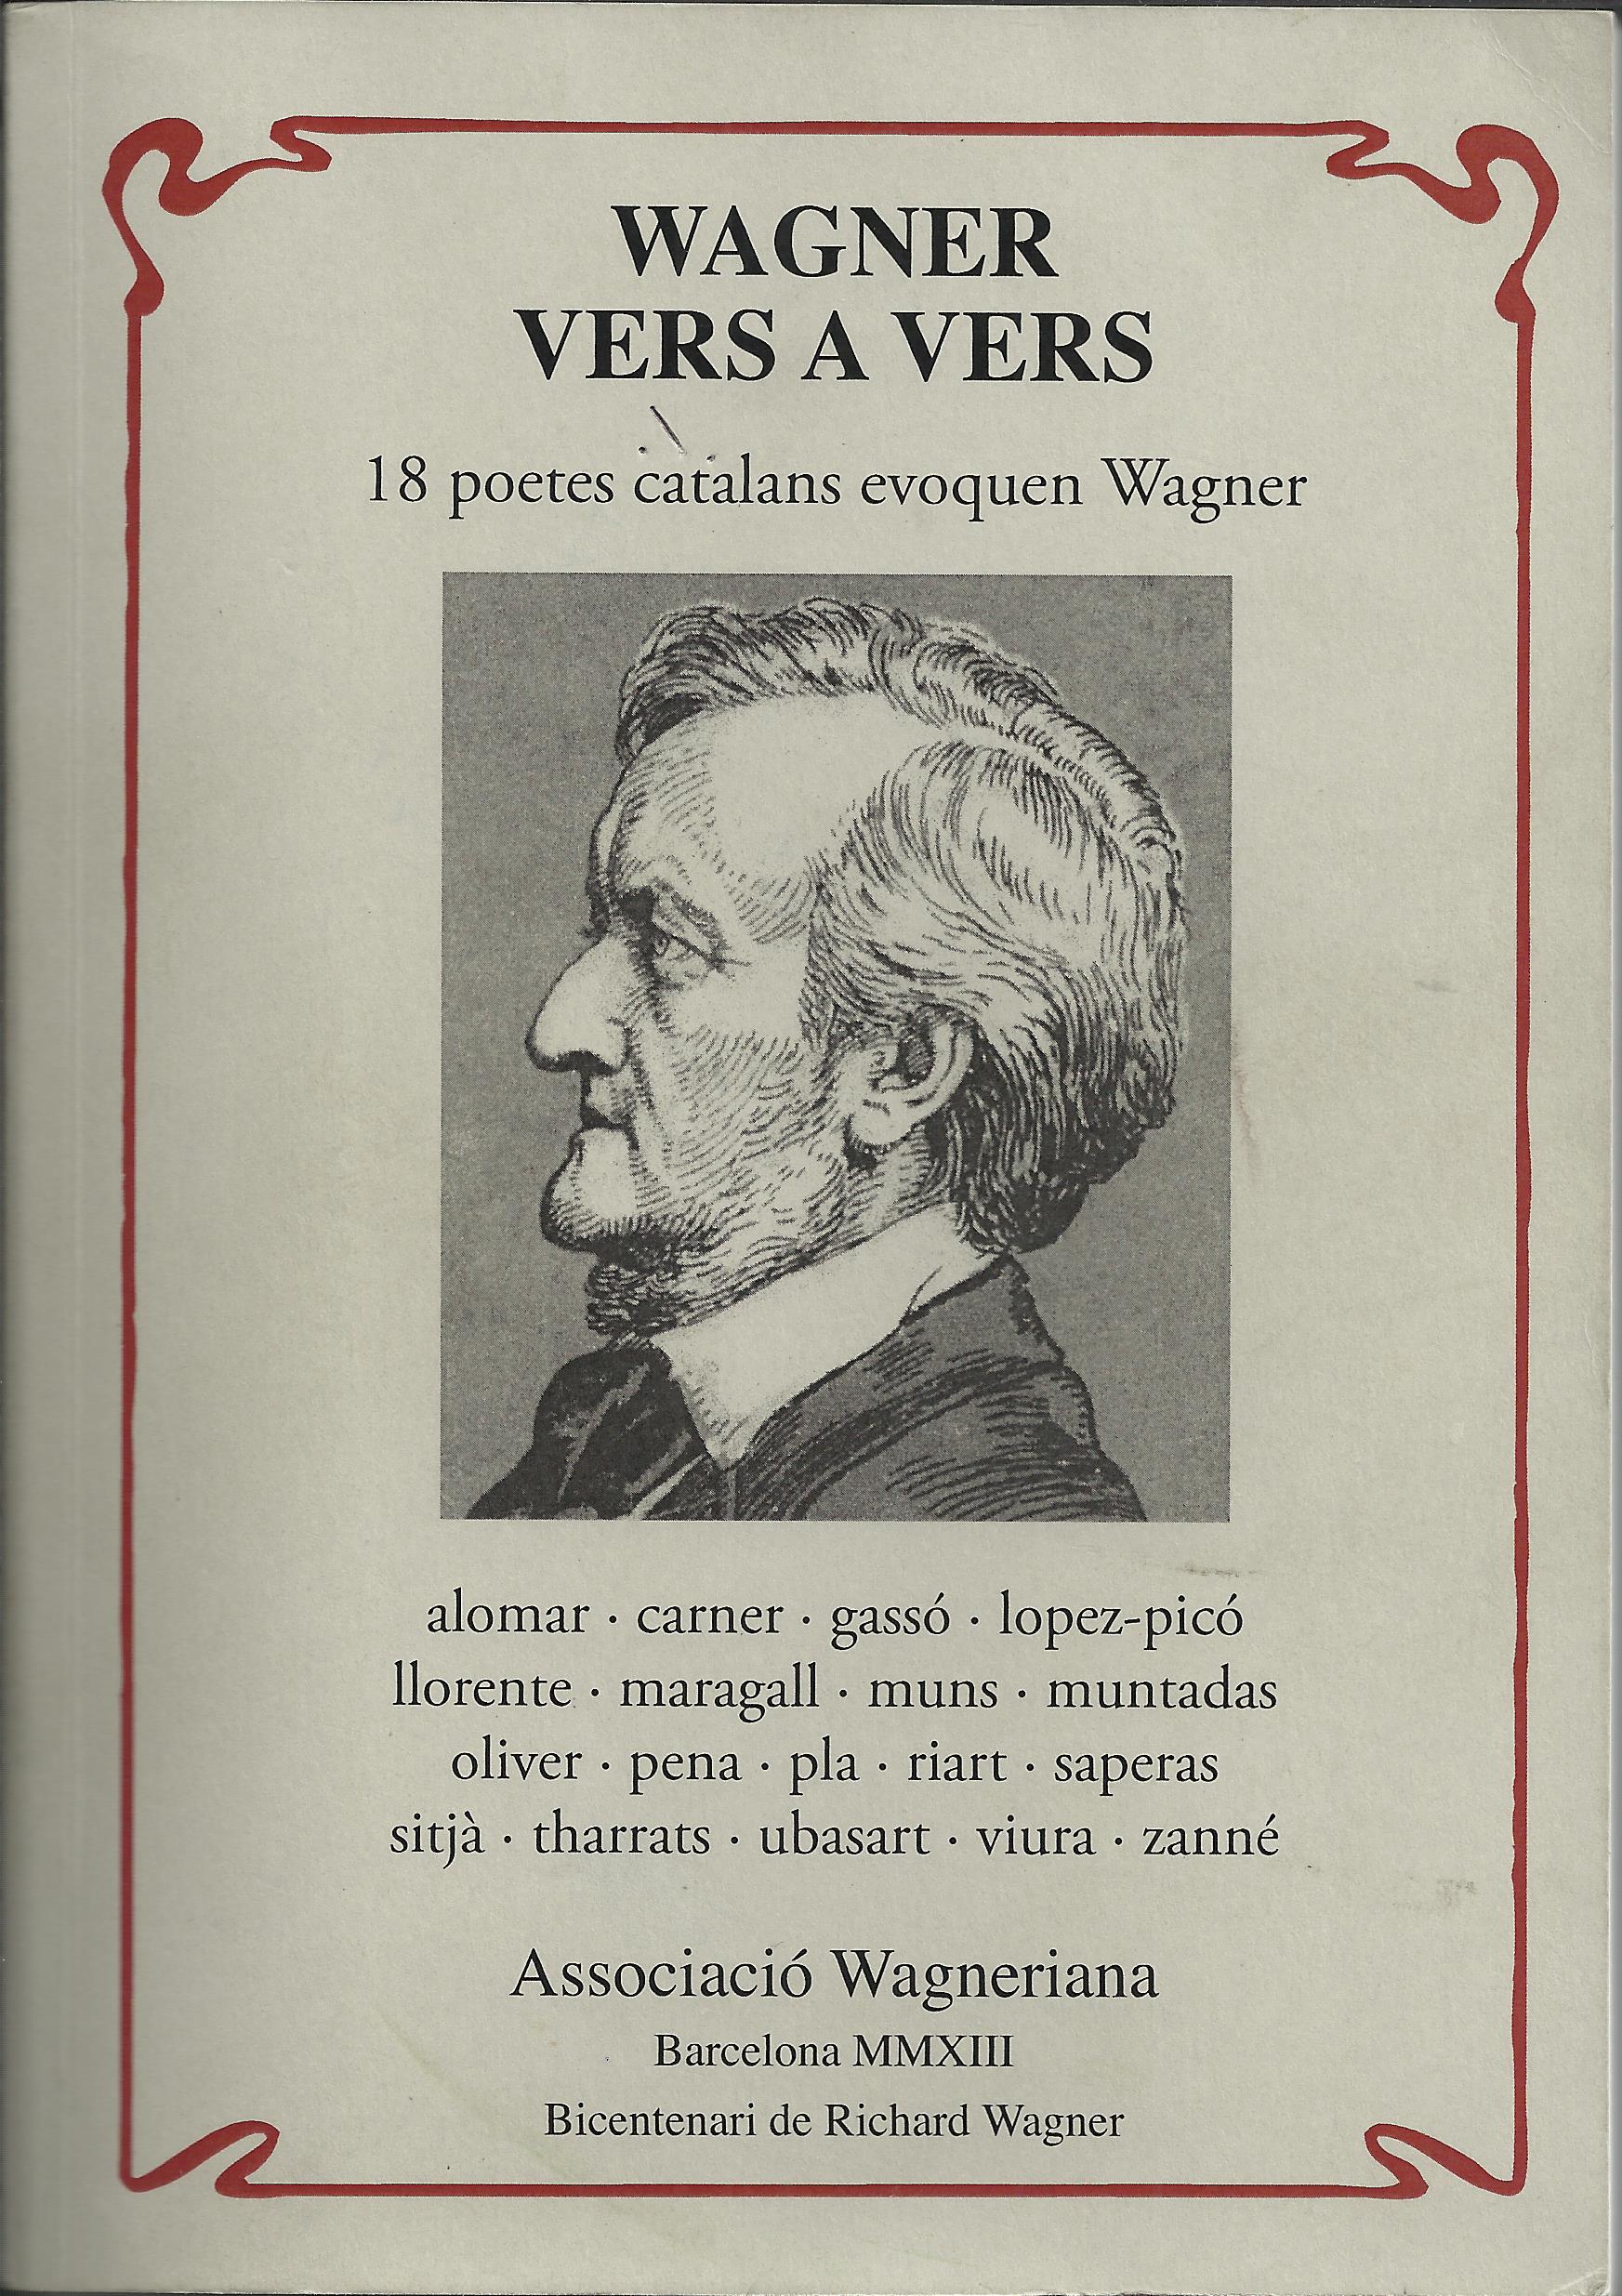 Bibliografia wagnerniana pel bicentenari (IV): discografia,  Assoc Wagner, estudis no traduts.